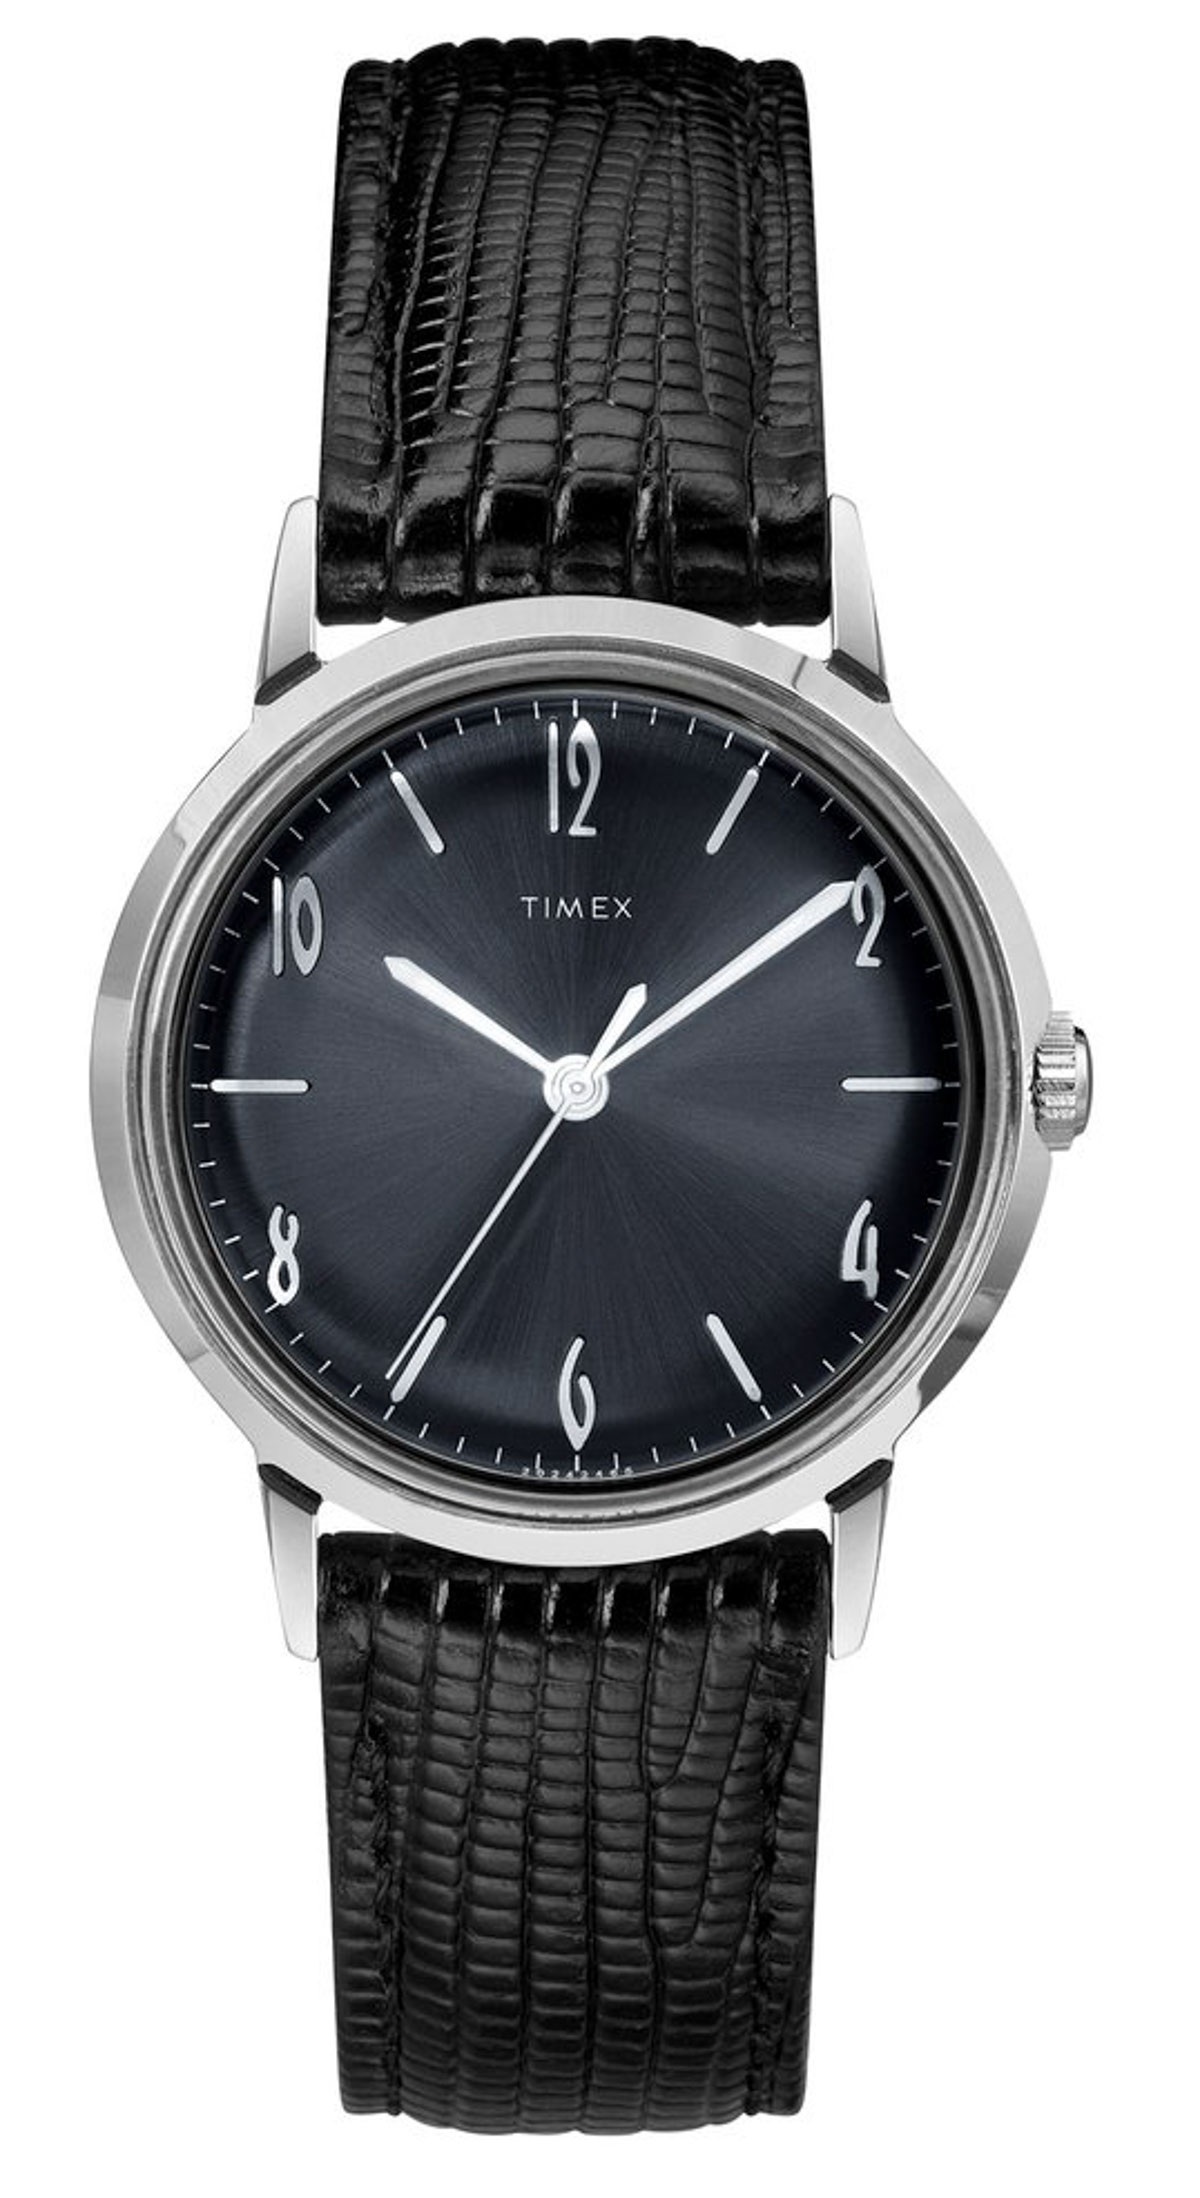 Todd Snyder + Timex Marlin Blackout Watch